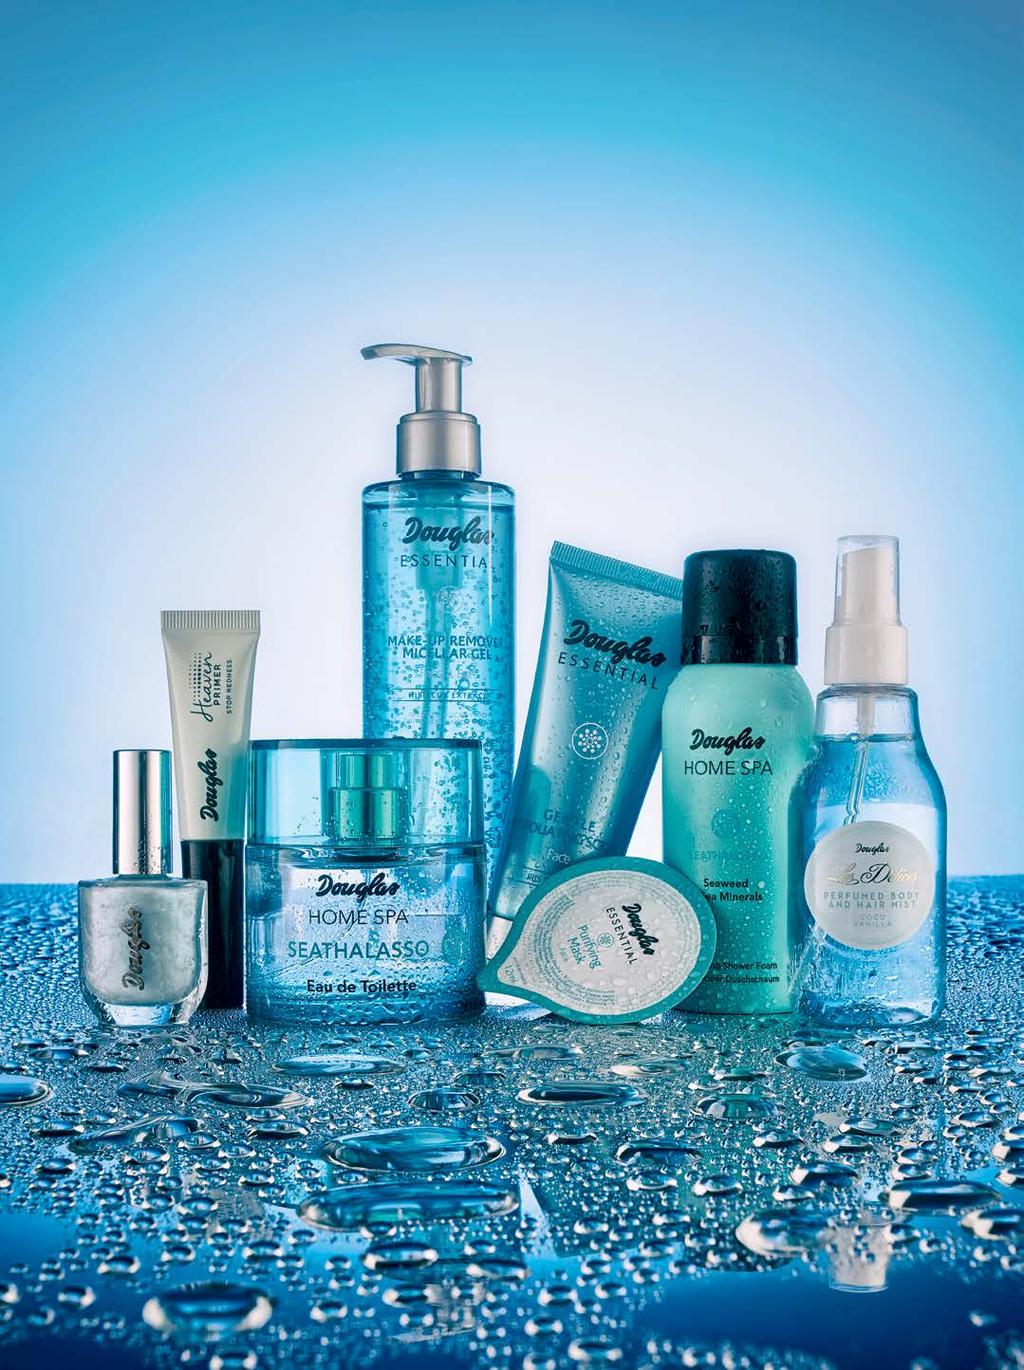 LOOKbook Hűsítő kékség Vegyük körbe magunkat olyan termékekkel, amelyek a vizet idézik, majd élvezzük a bőrünkön egy frissítő testpermet, egy üde parfüm vagy éppen egy könnyed gél hűsítő hatását.